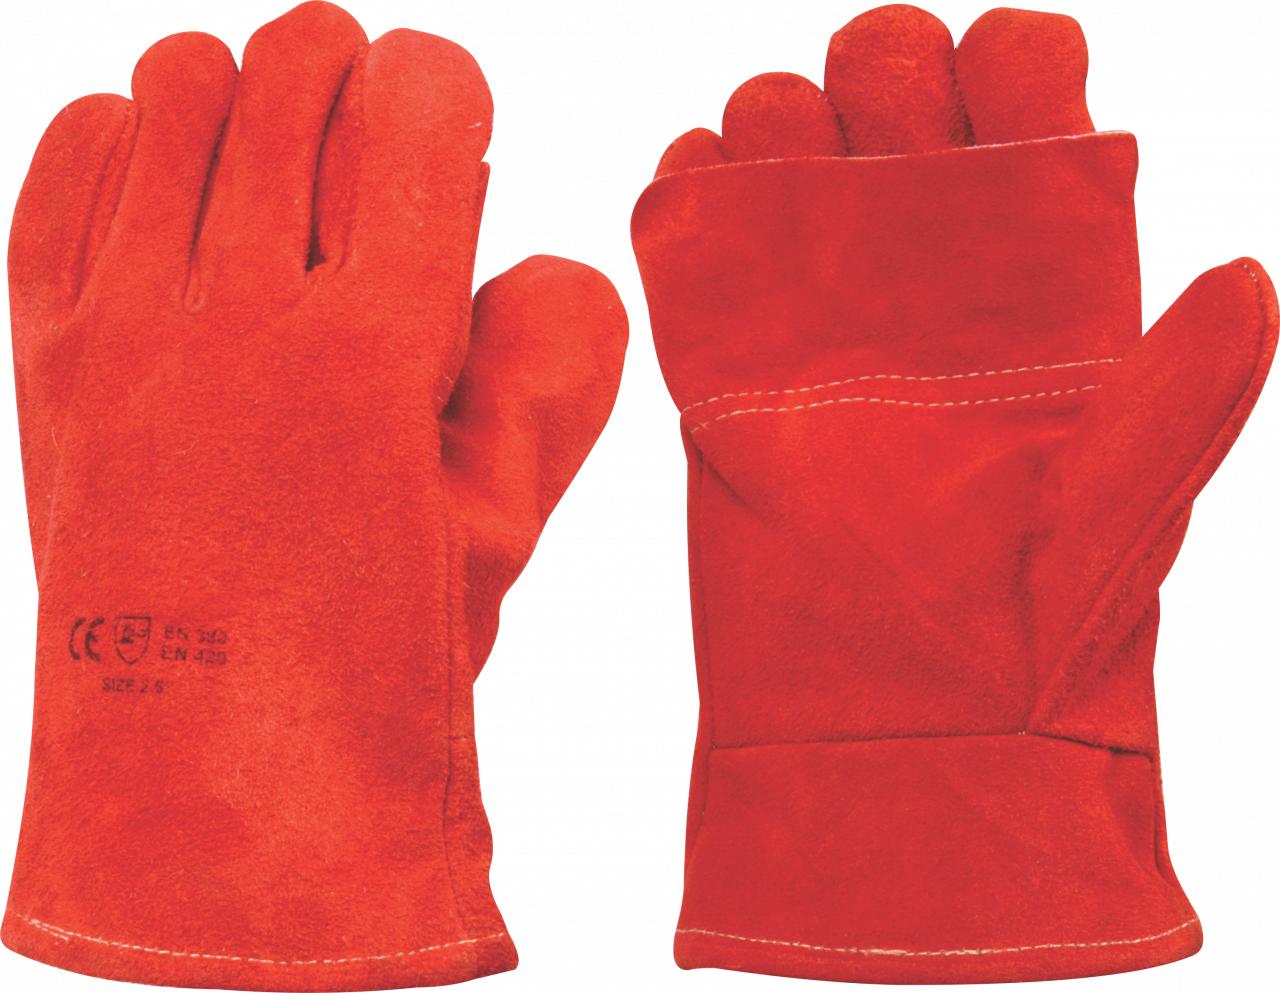 Leather Glove Heat Red Cuff 8 inch